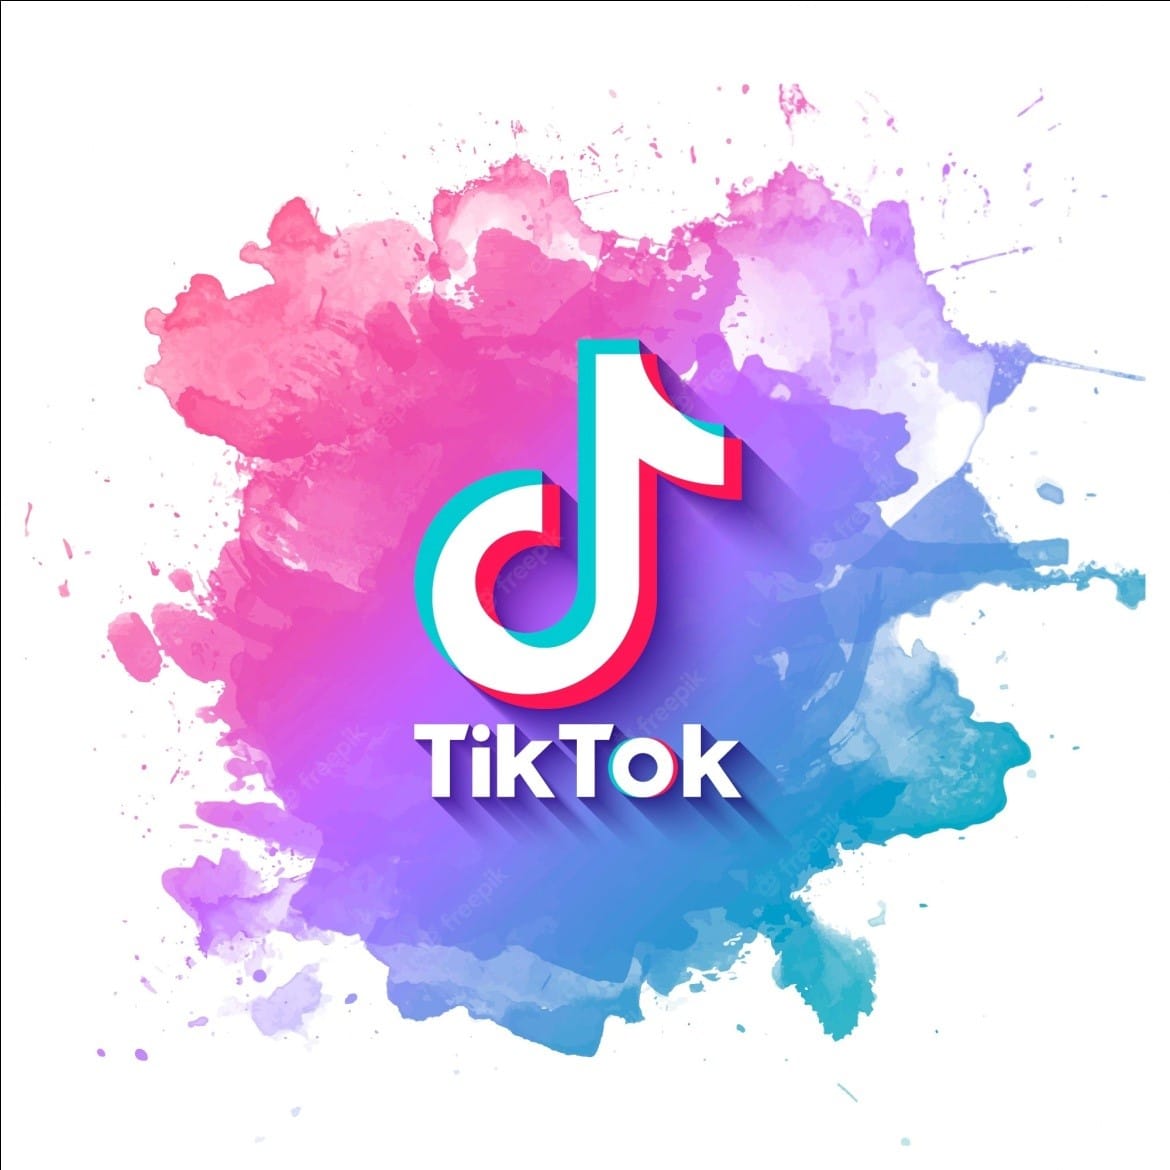 Billedillustration af TikTok-logoet. Billede taget via internettet